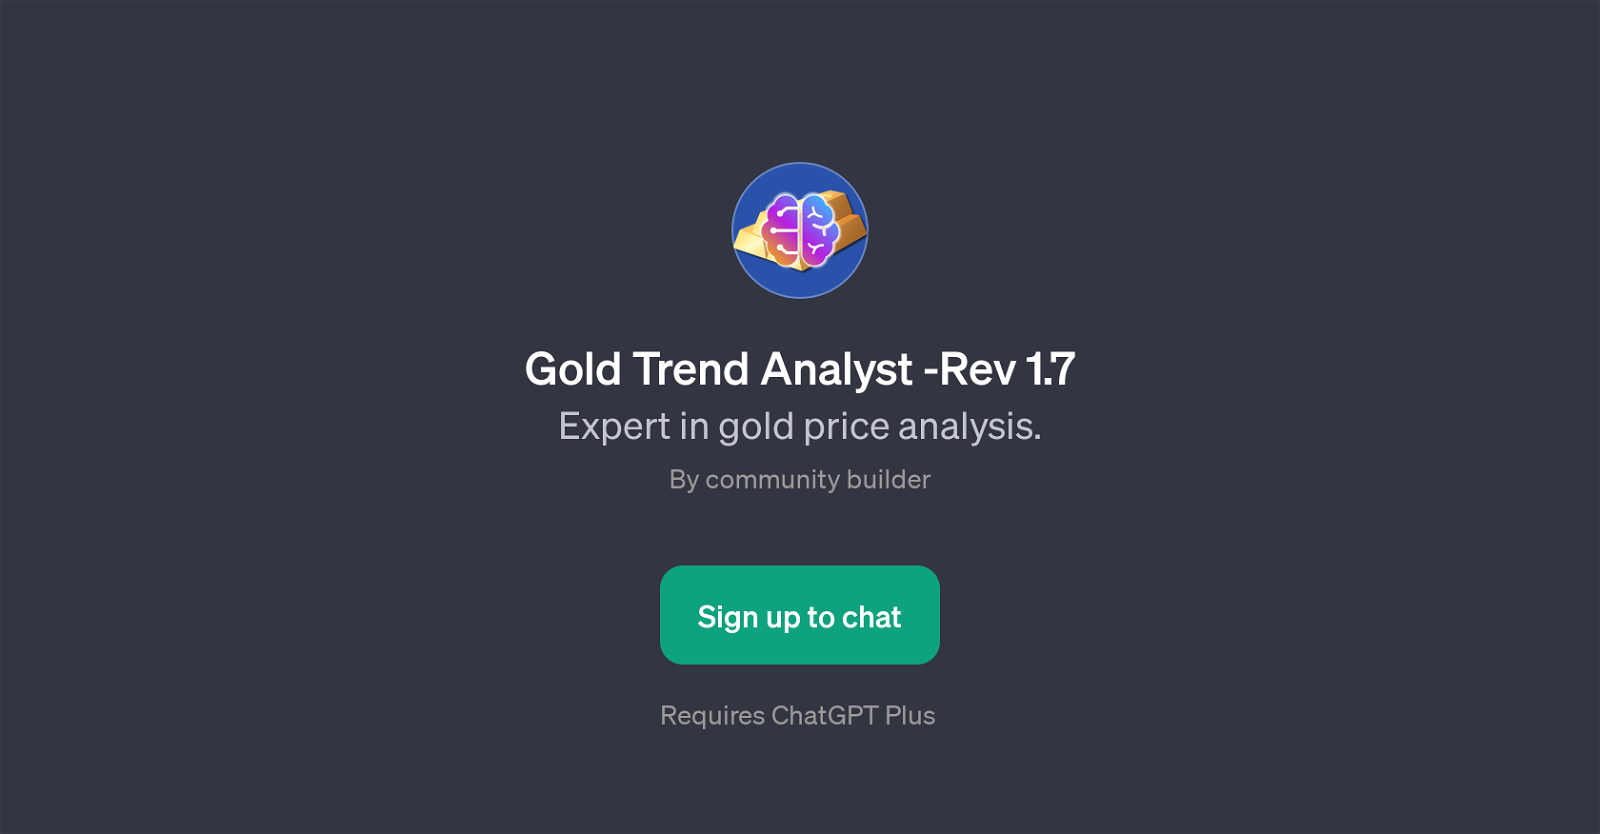 Gold Trend Analyst -Rev 1.7 website